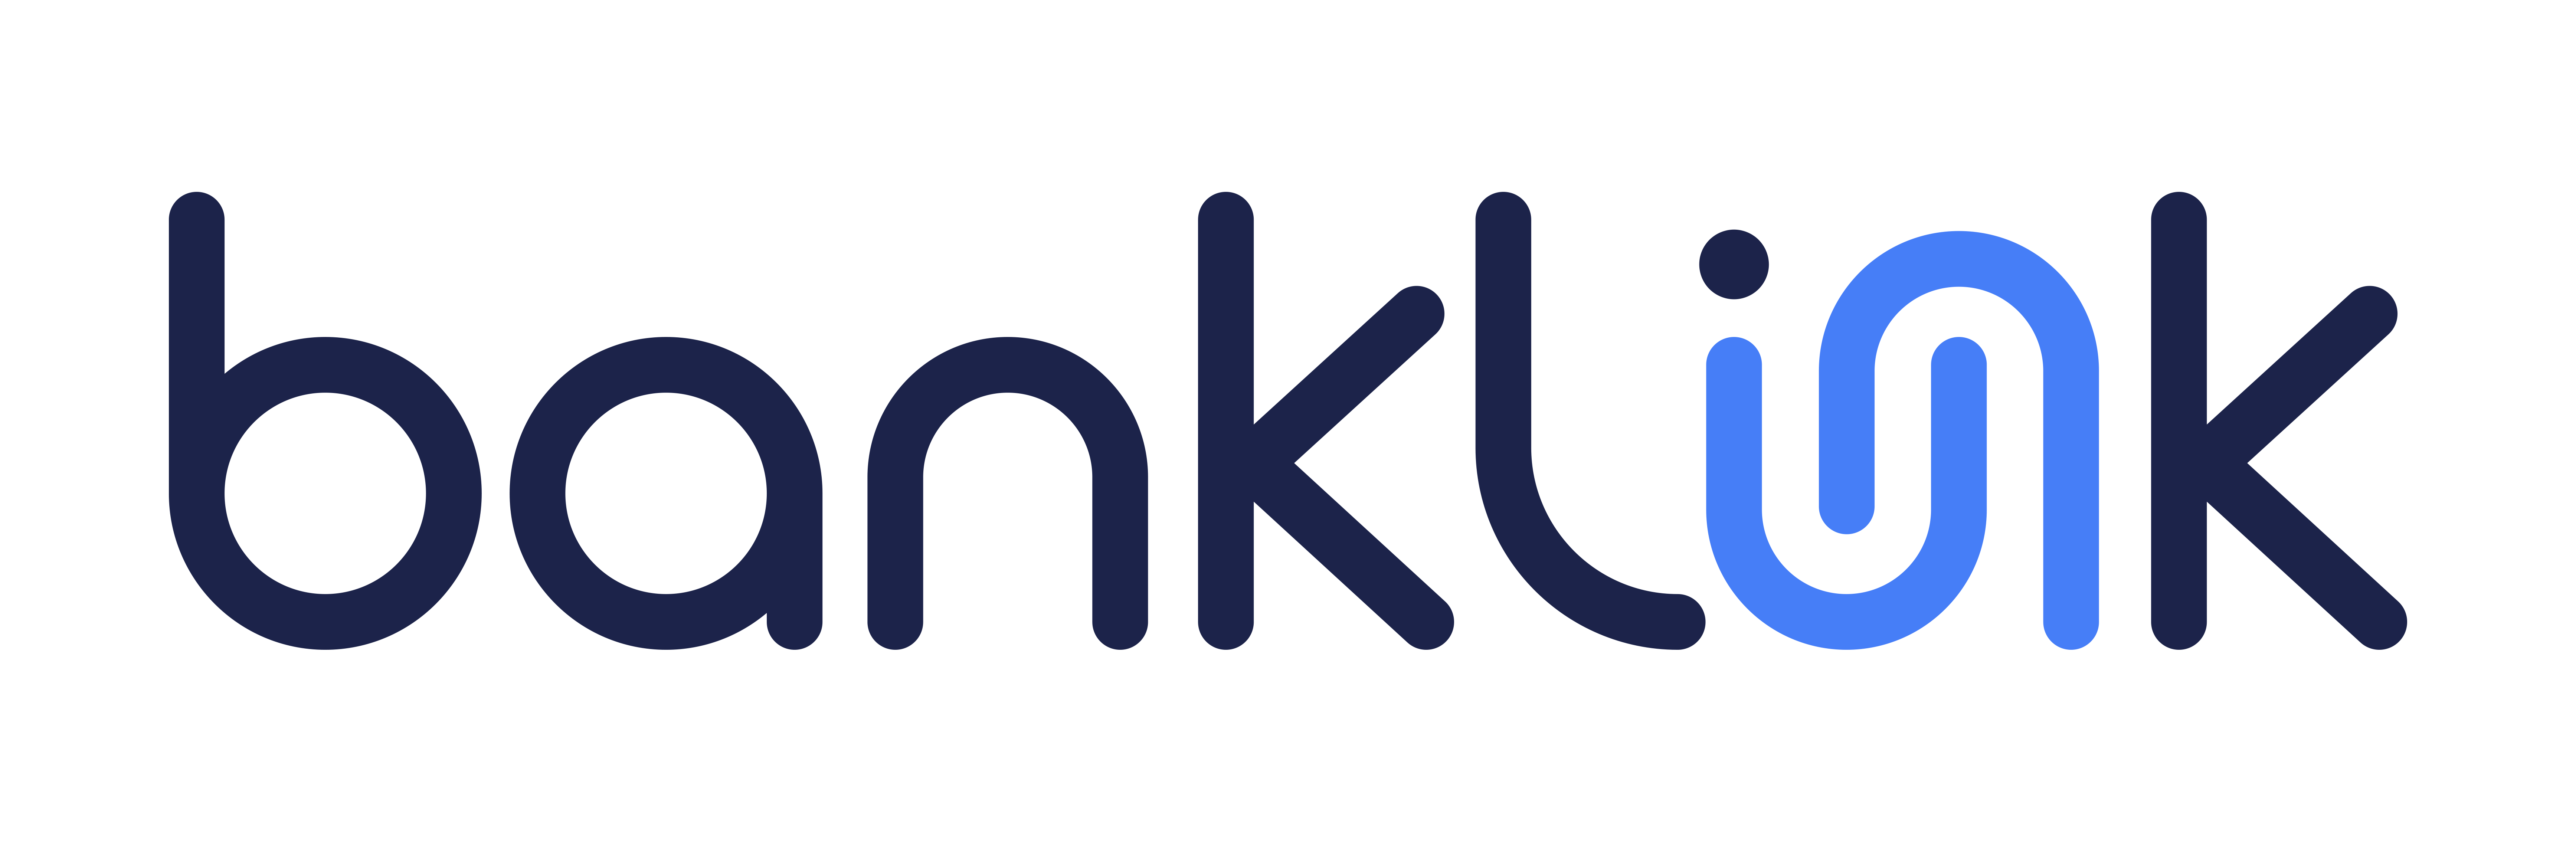 banlink logo powered by windsor advantage lender service provider